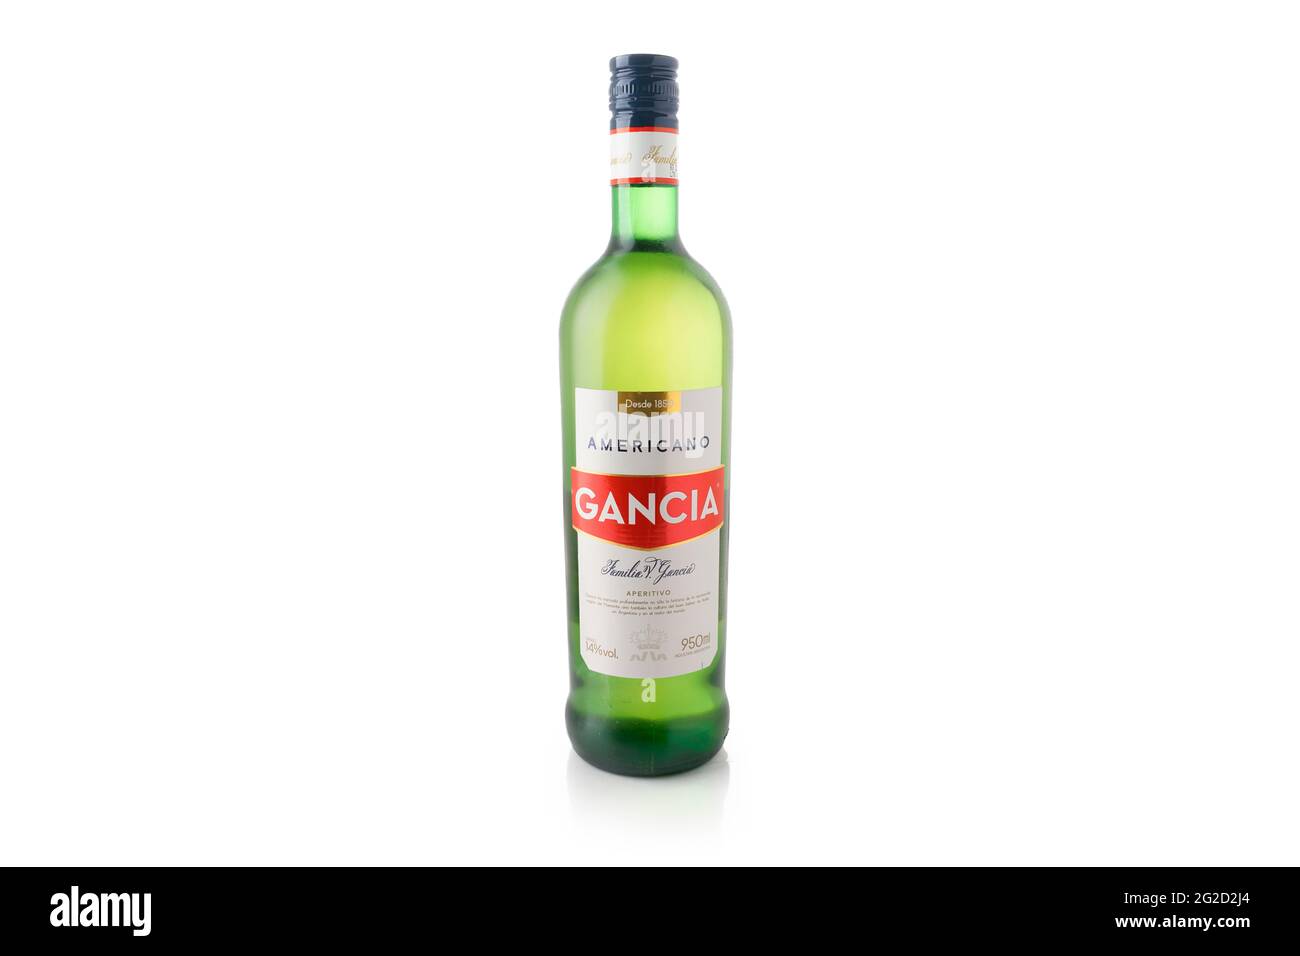 Gancia bottle on white background. Italian aperitif. Alcoholic beverage Stock Photo